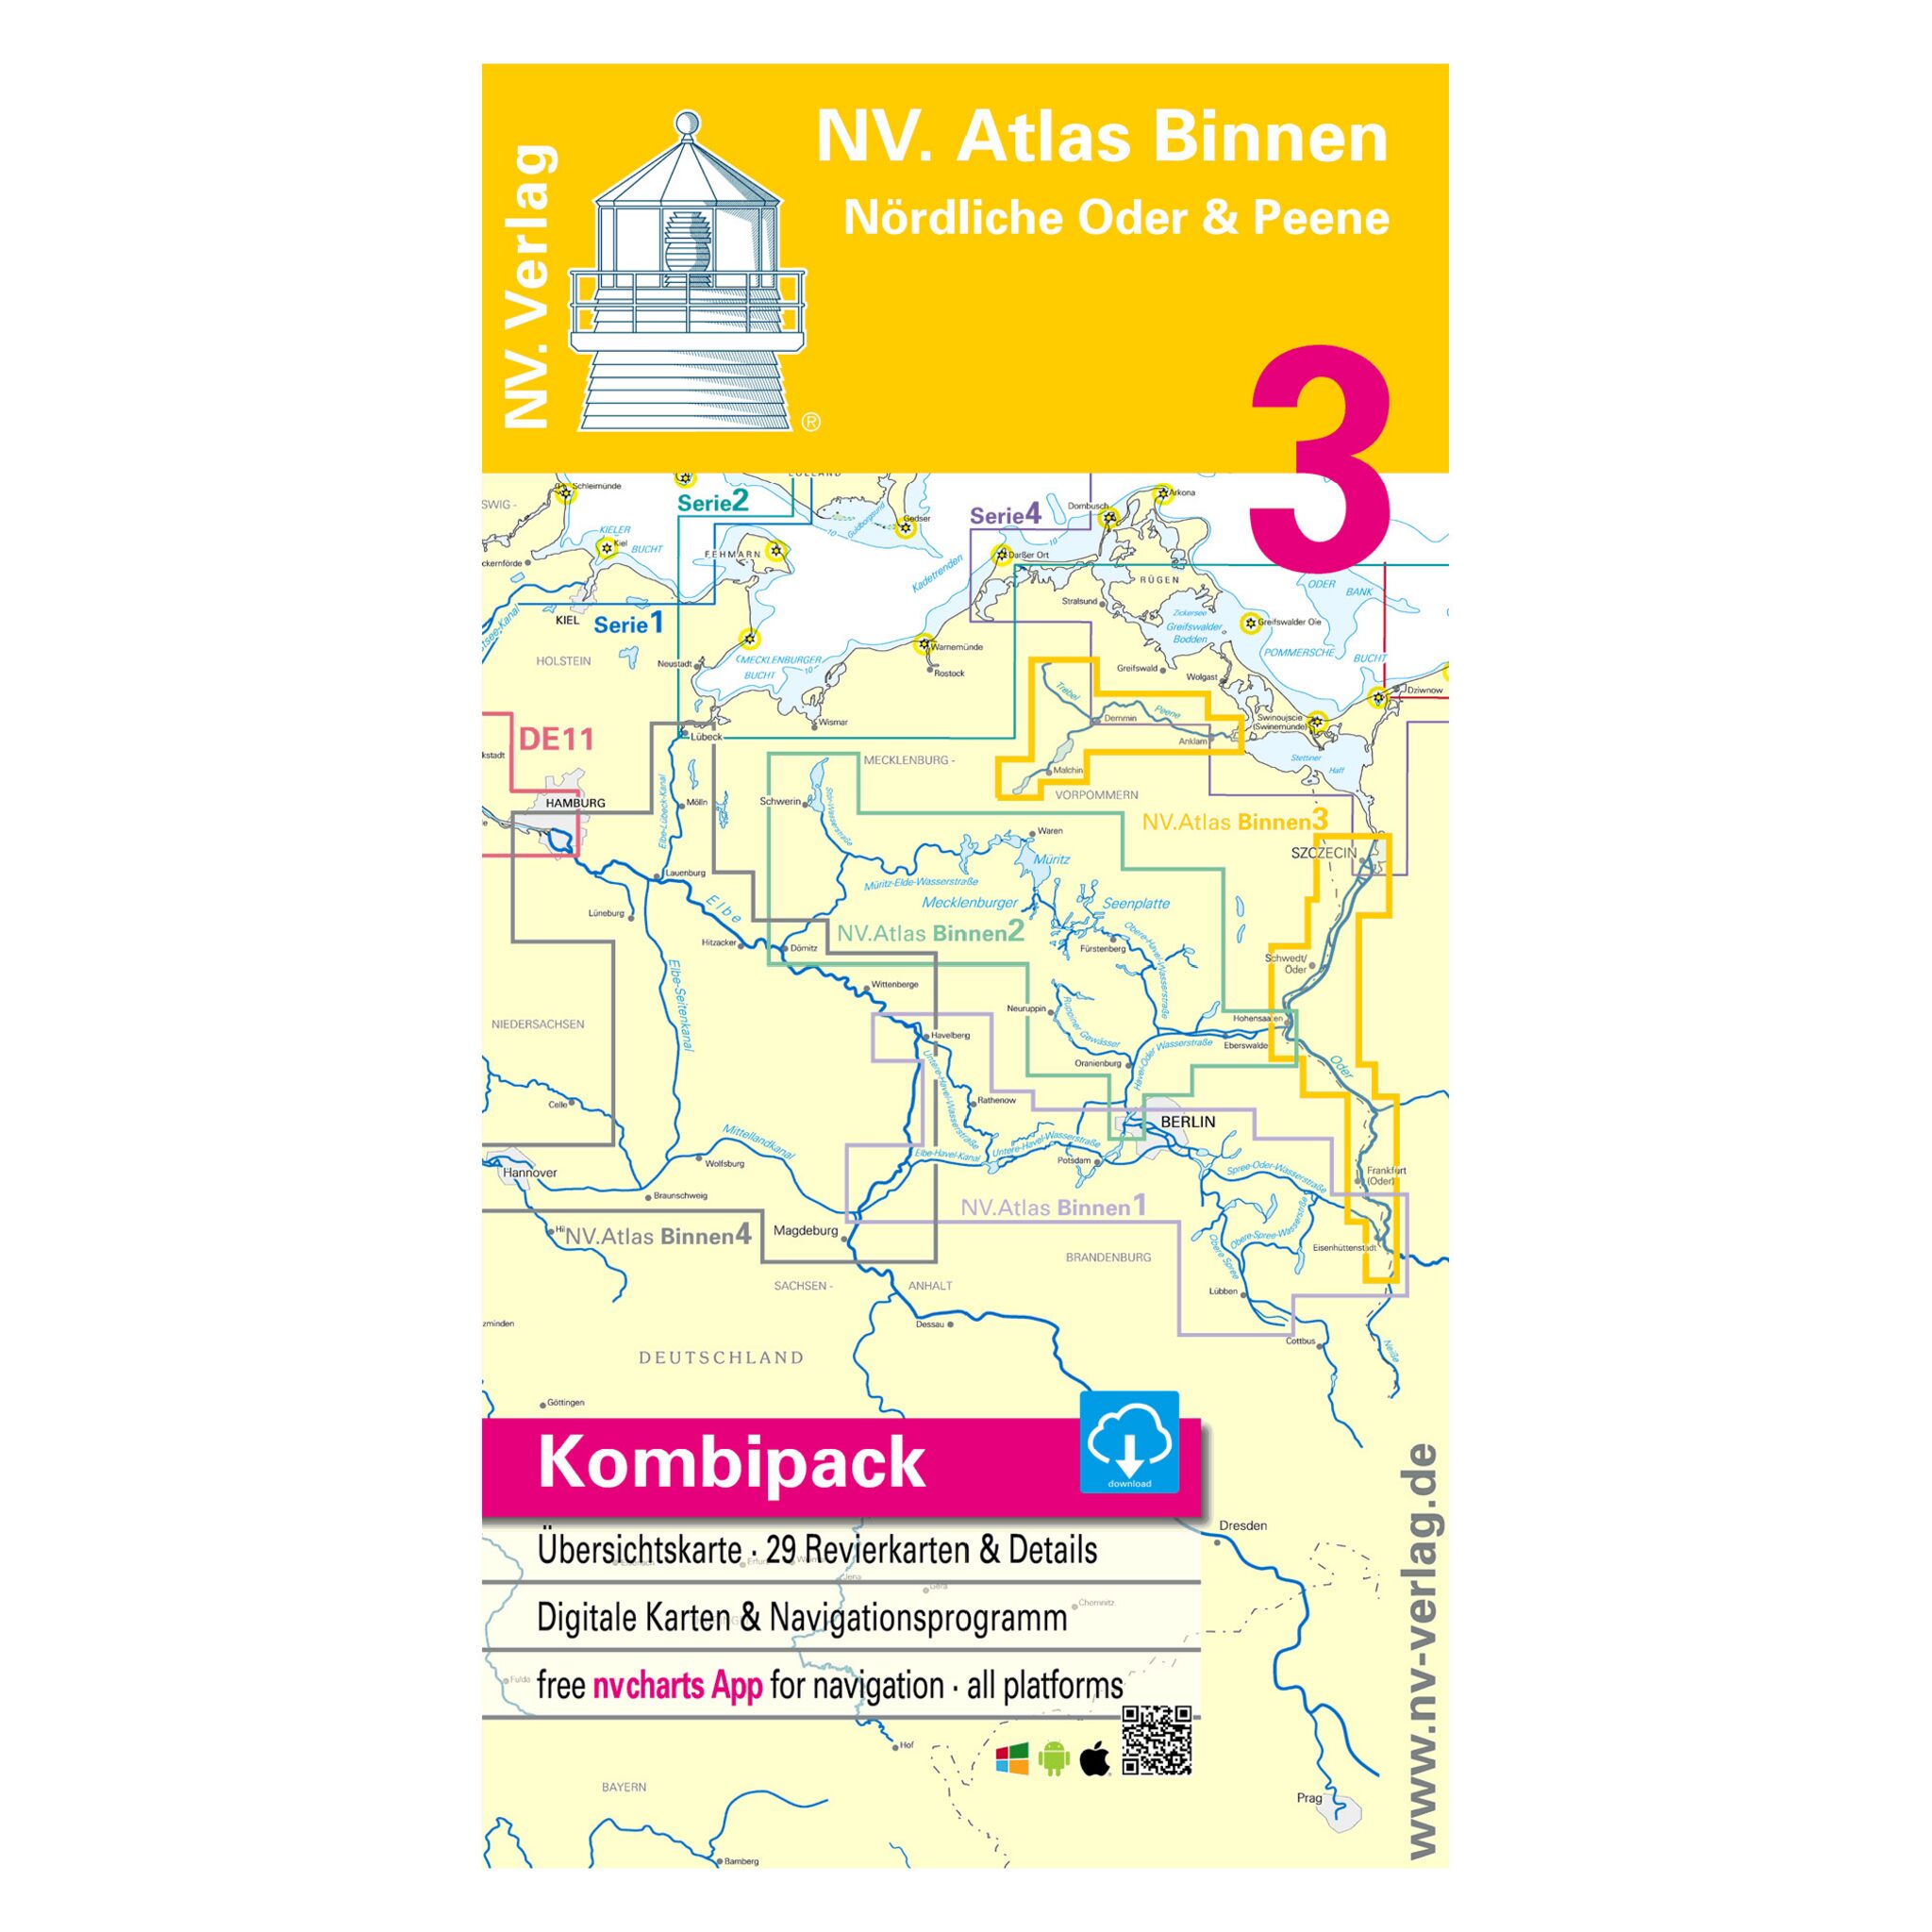 NV Atlas Binnen 3 - Nördliche Oder und Peene - Kombipack